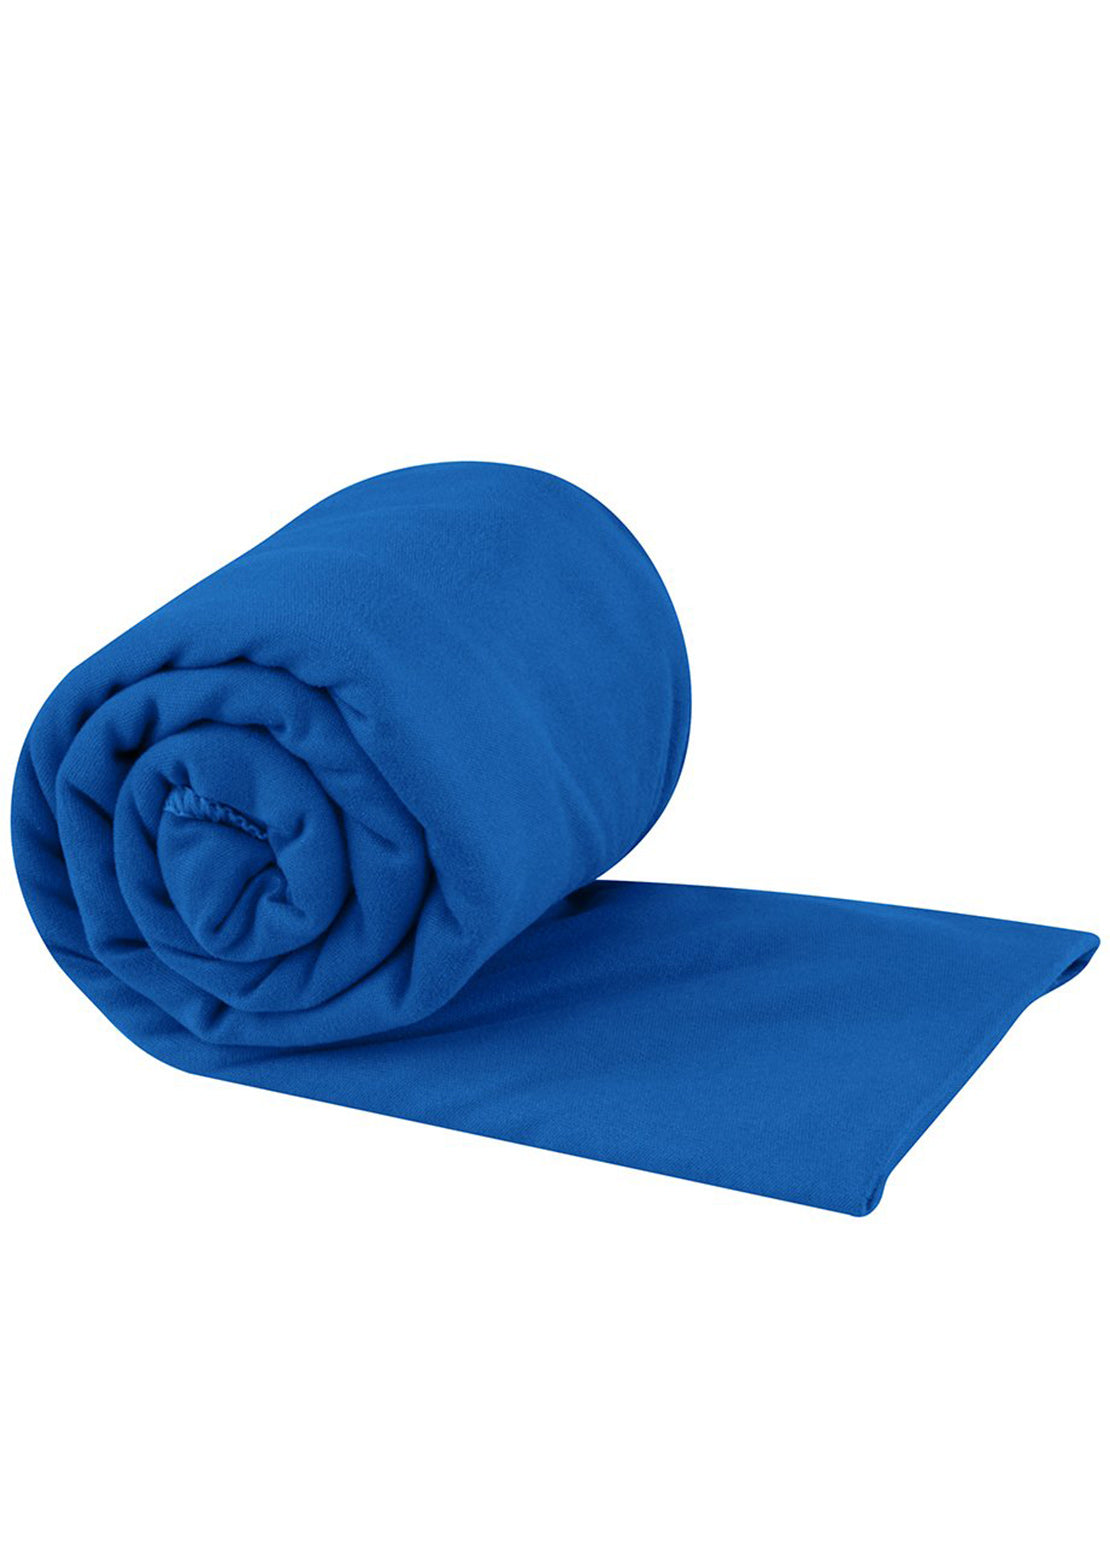 Sea To Summit Pocket Towel - XLarge Cobalt Blue